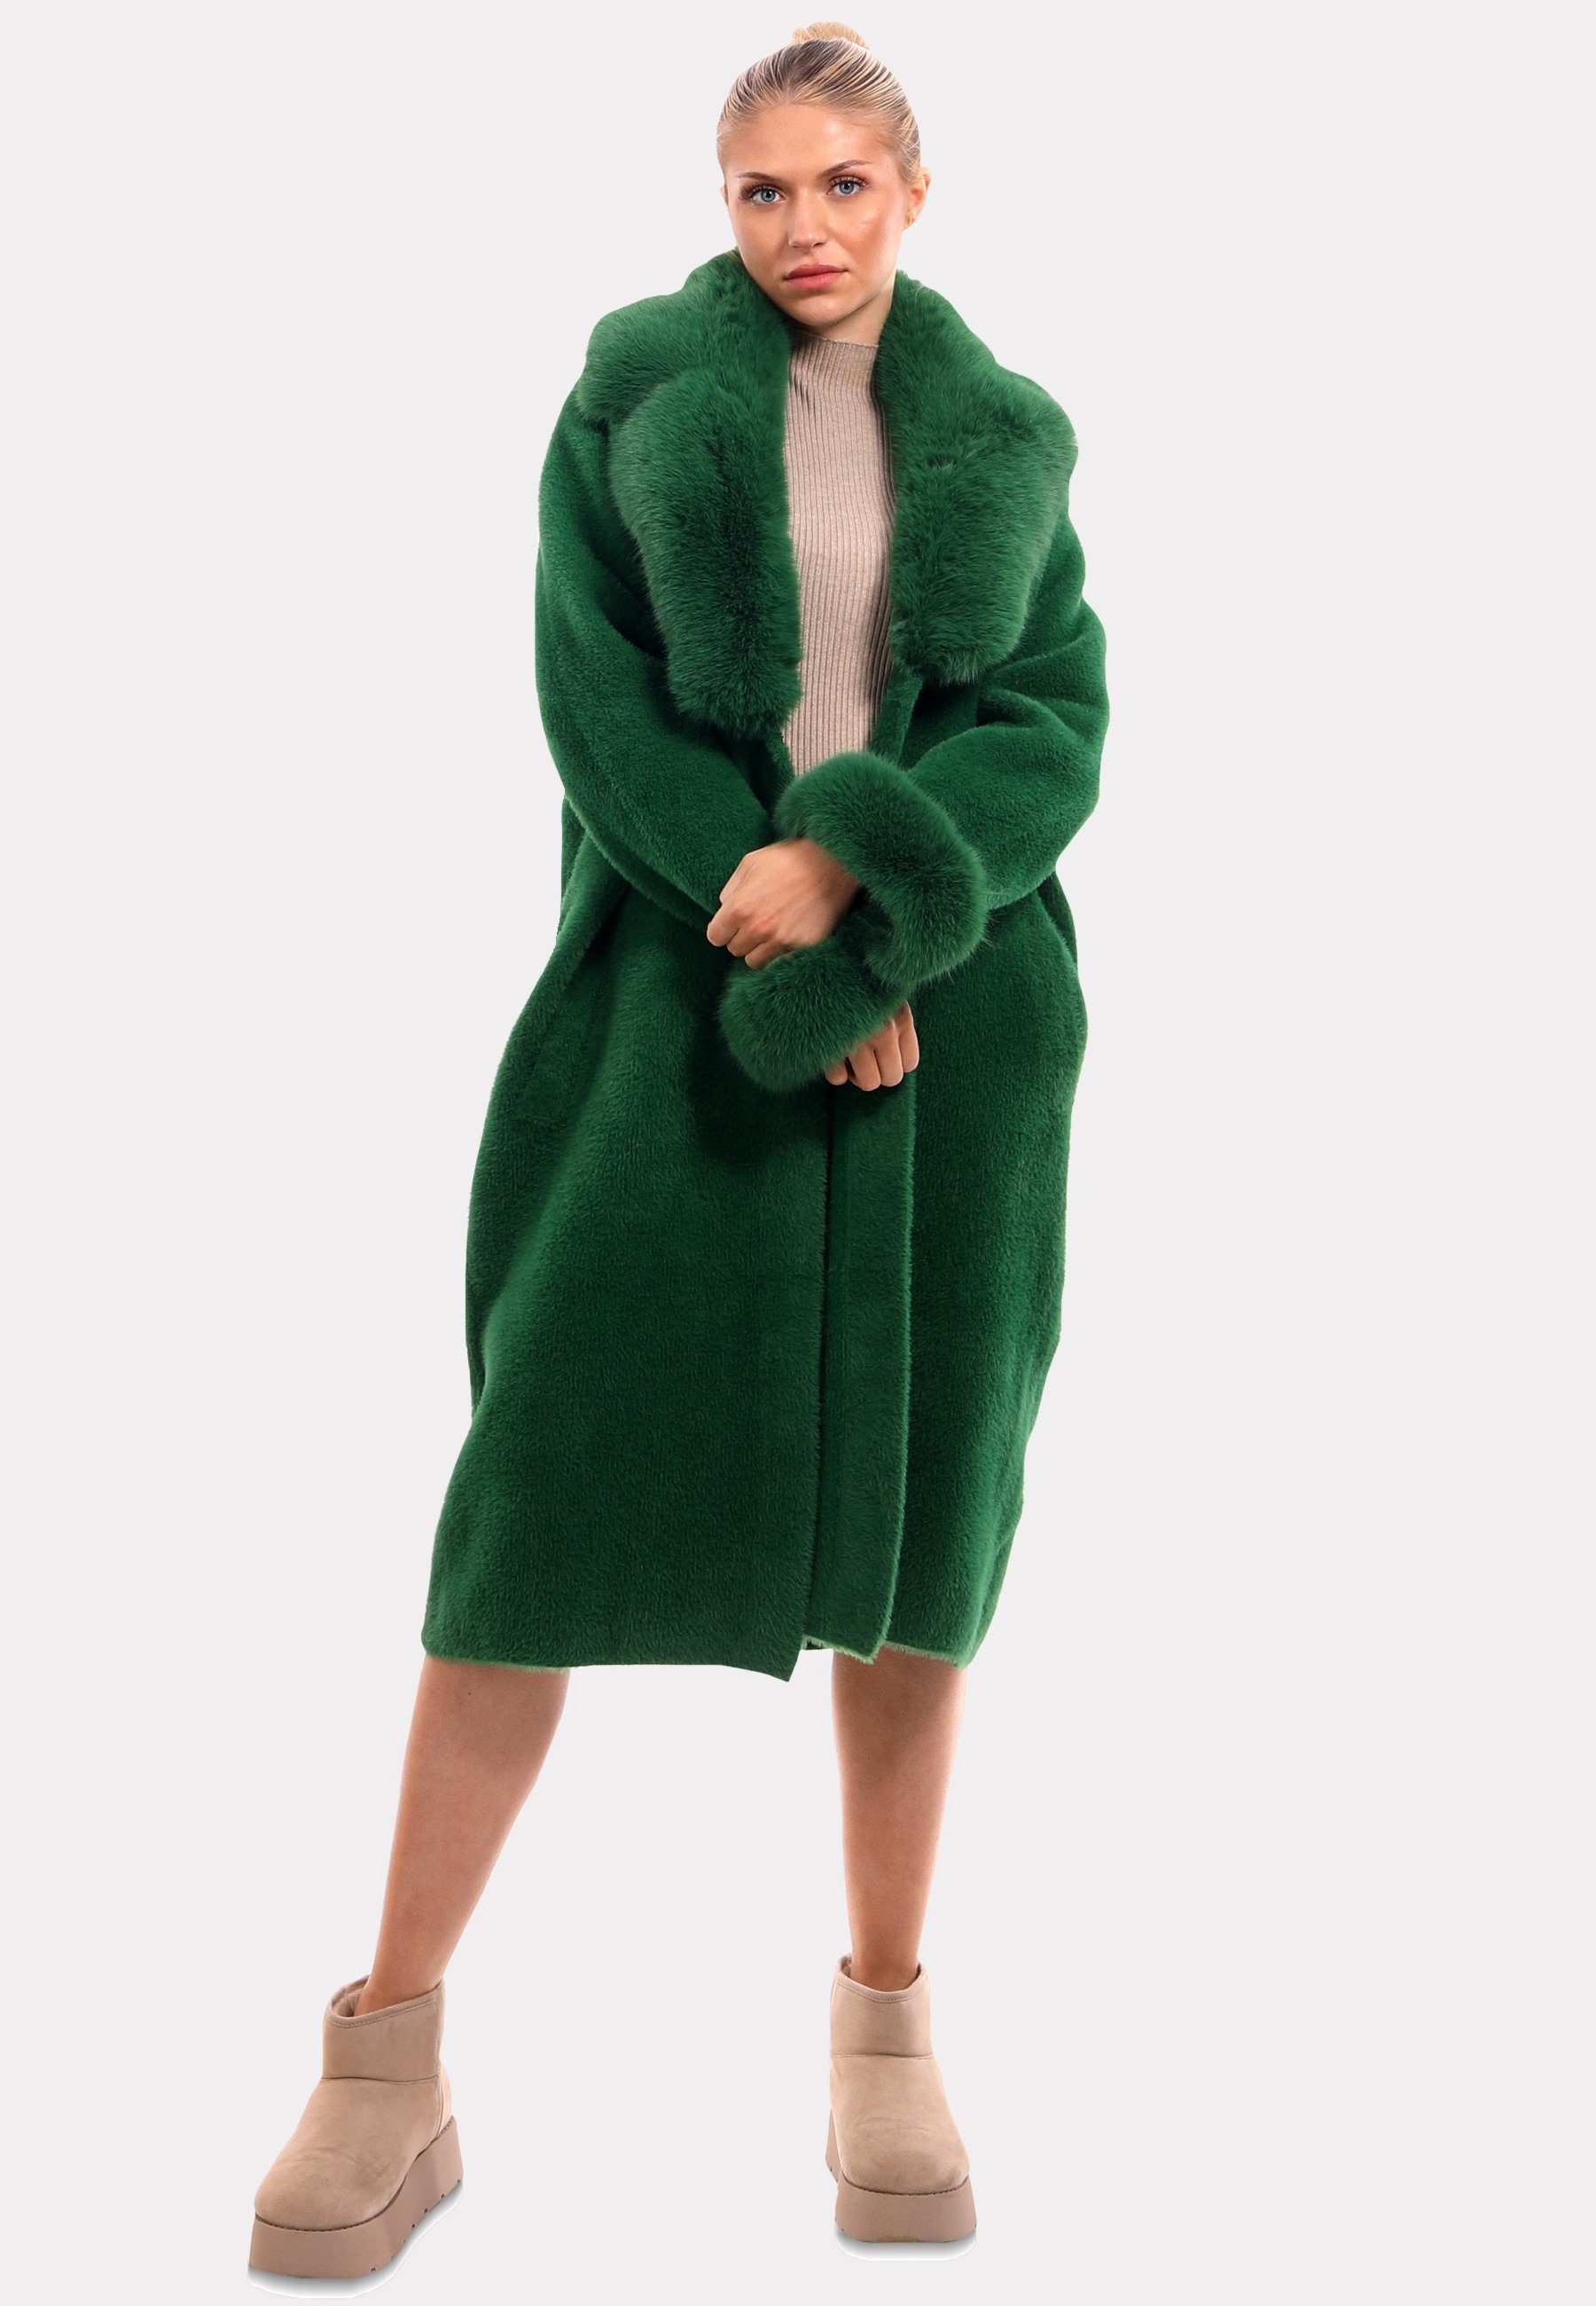 Fashion luxuriösem "Exquisiter grün YC Kunstpelz-Details" mit Poncho & Style Mantel